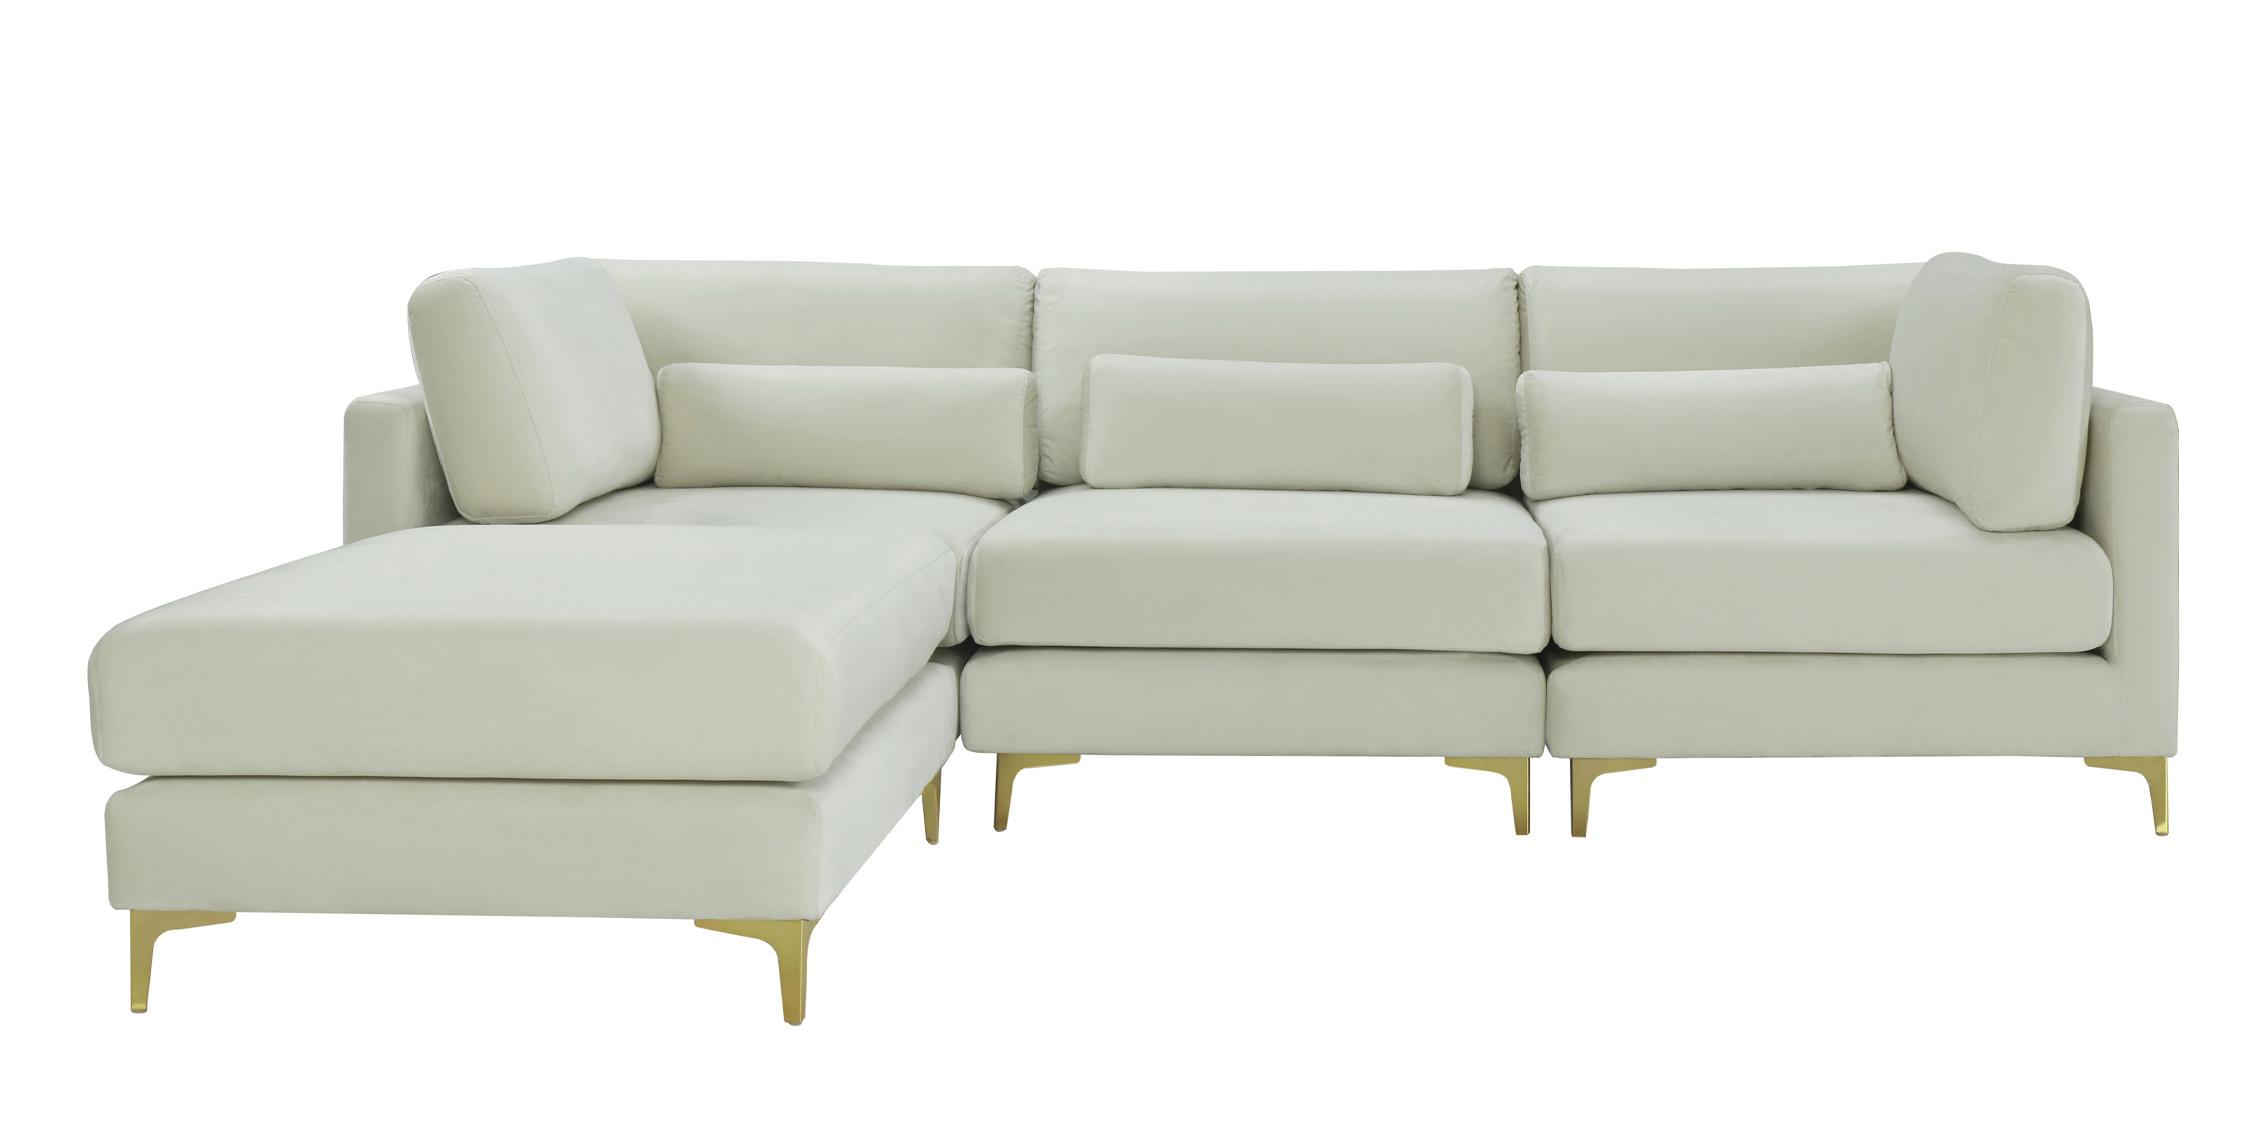 

    
Meridian Furniture JULIA 605Cream-Sec4A Modular Sectional Sofa Cream 605Cream-Sec4A
